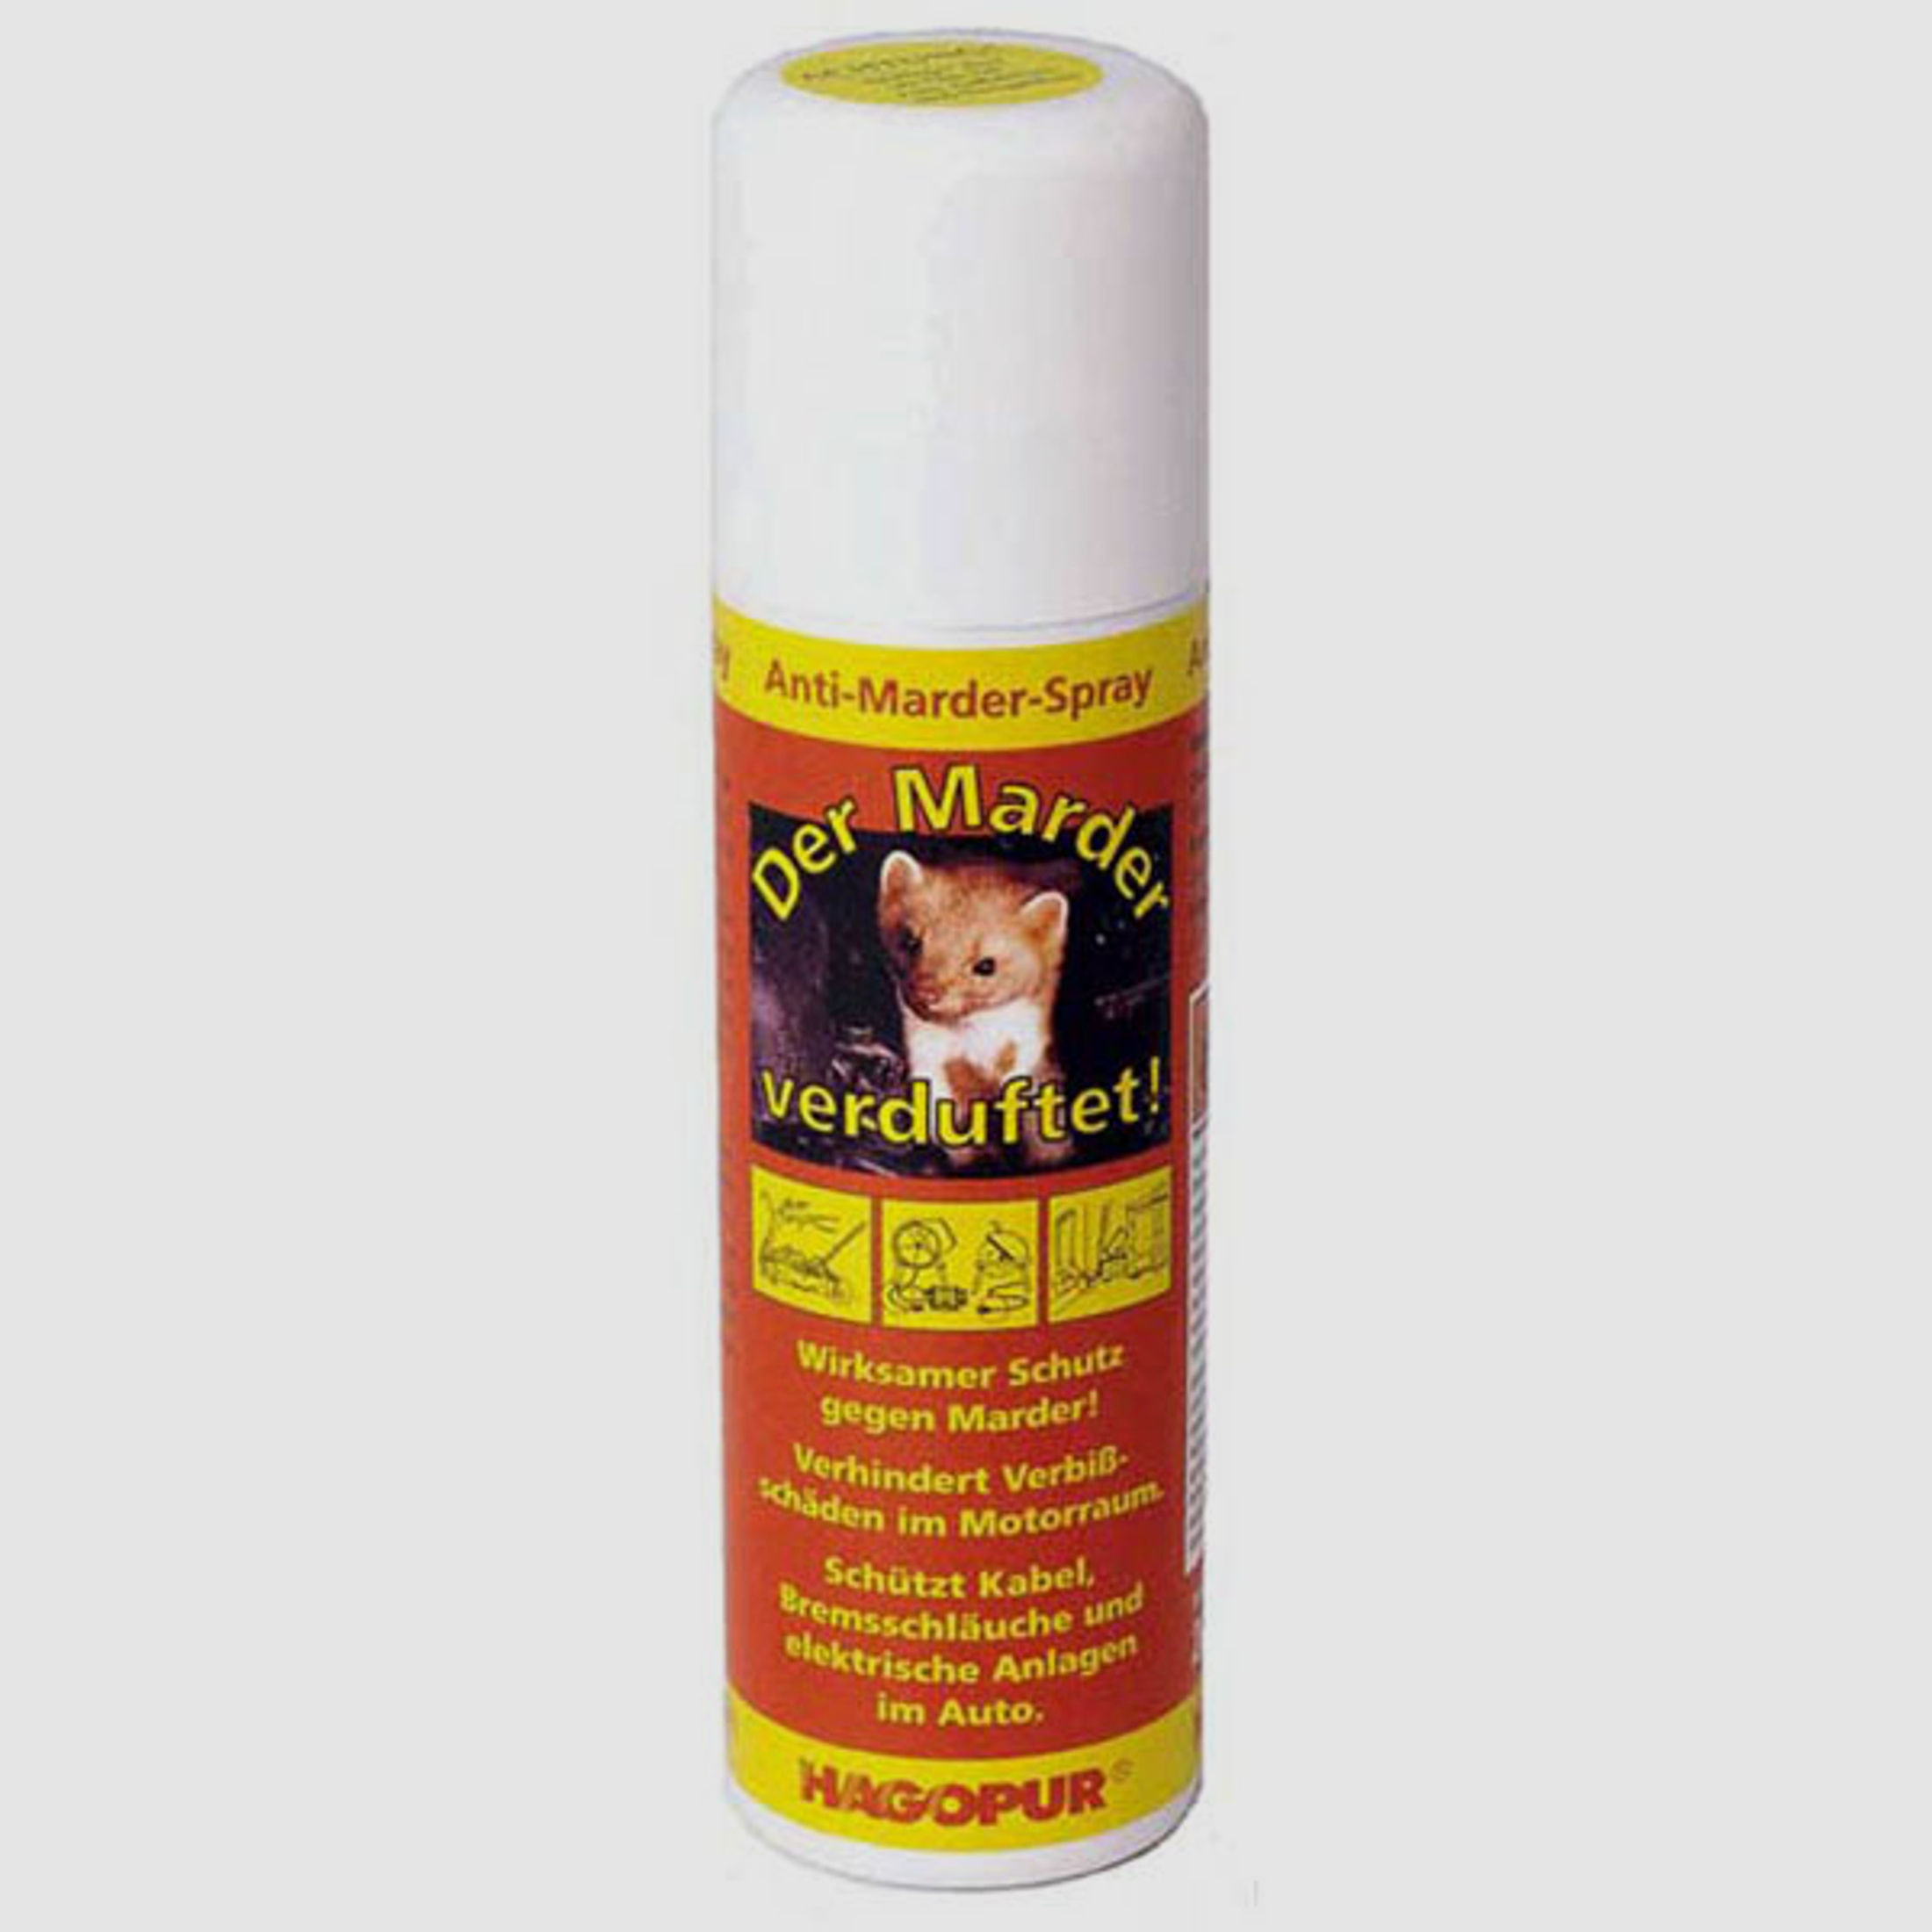 Anti-Marder-Spray - Der Marder verduftet, 200 ml